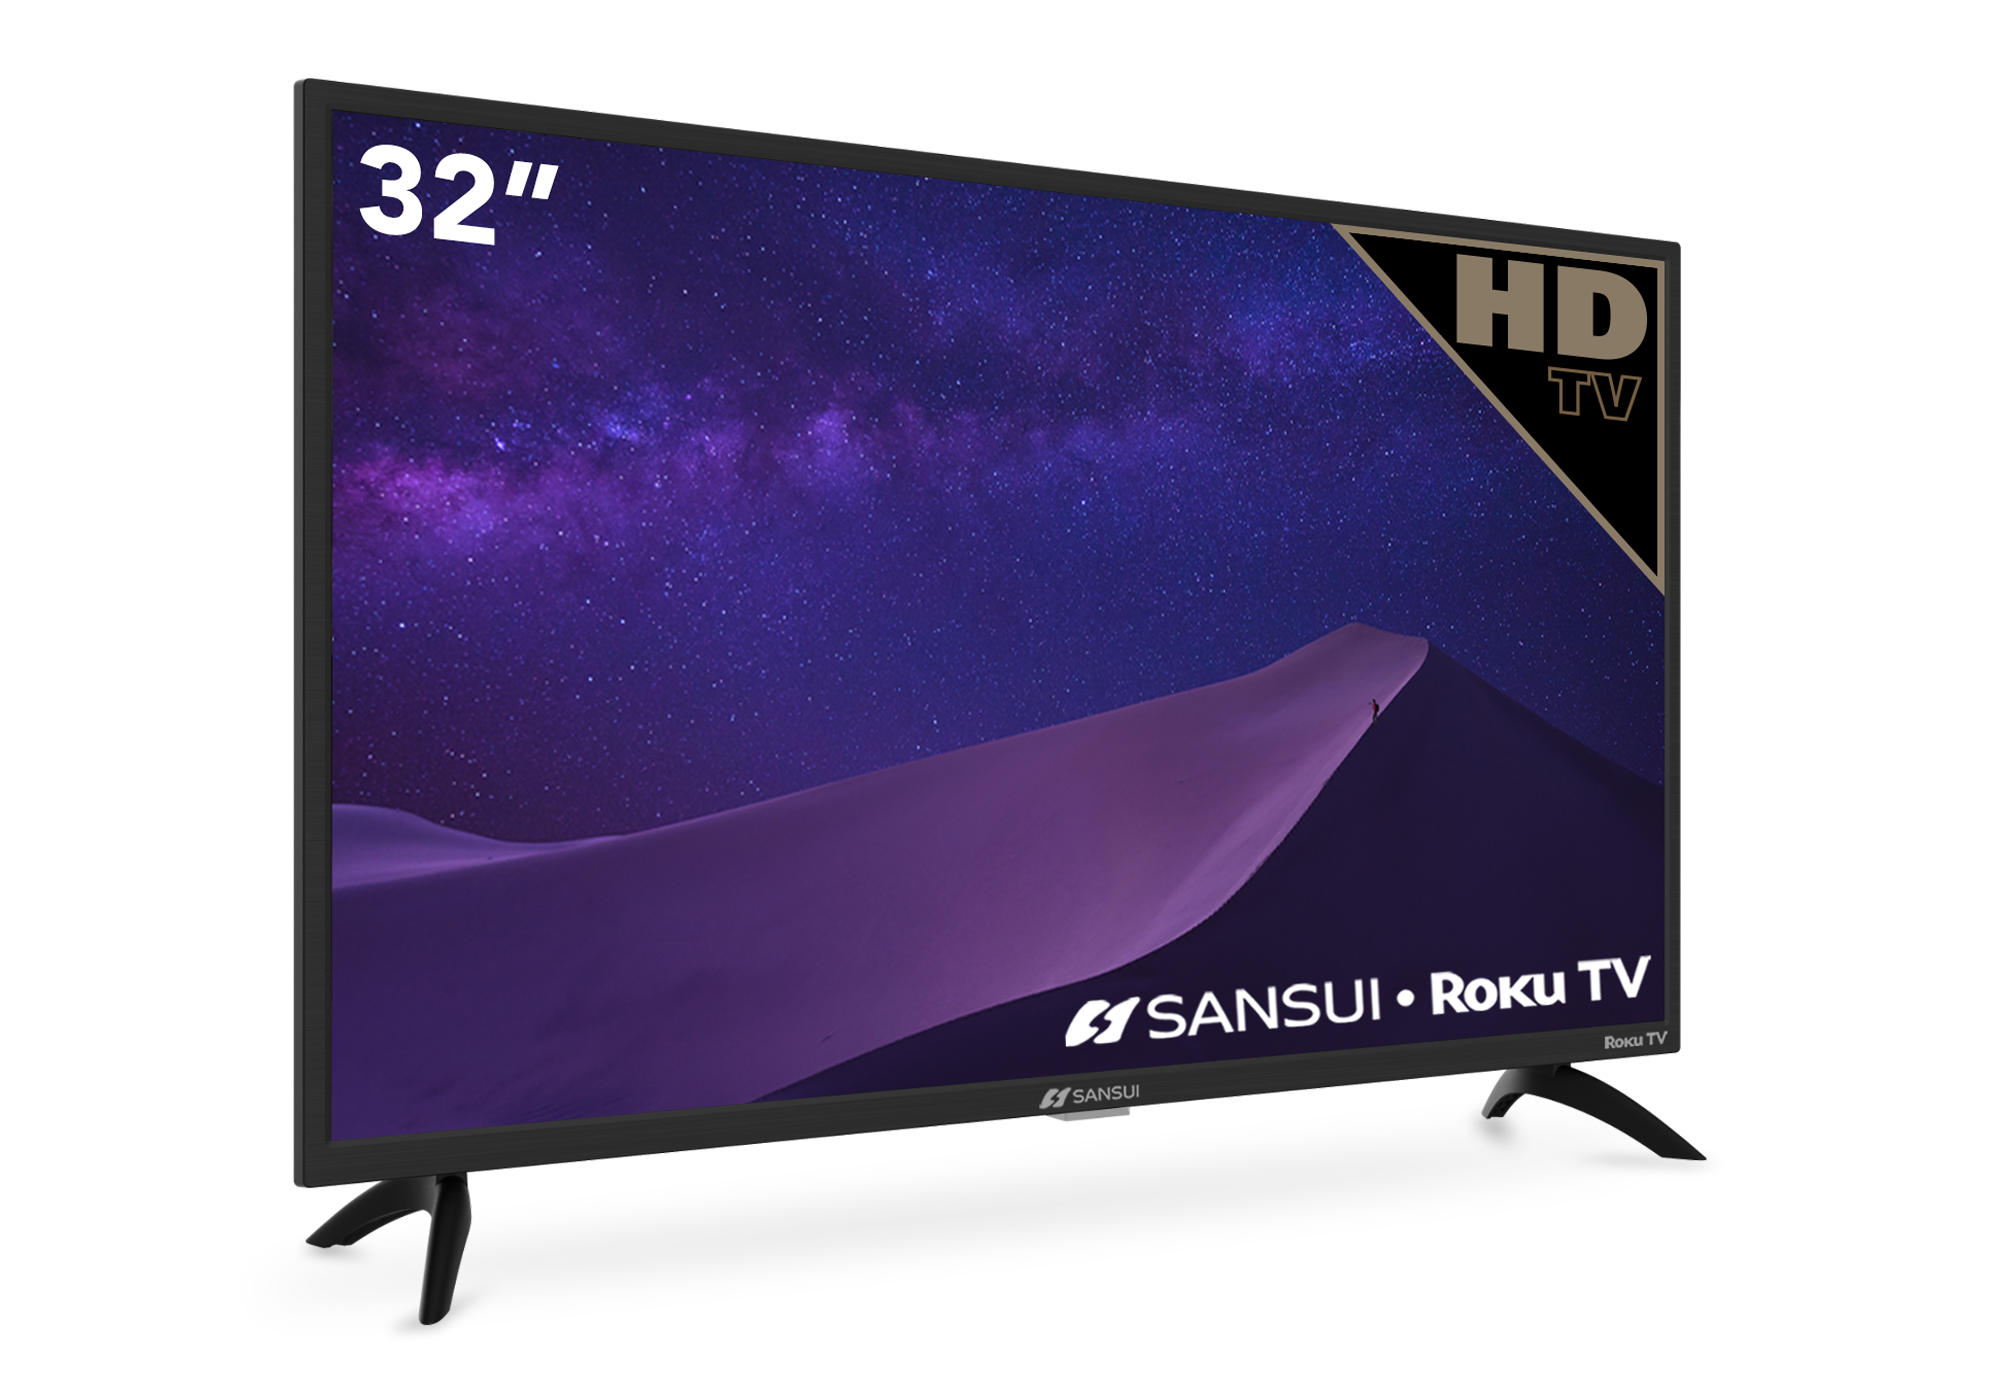  Sansui - Smart TV HD LED 720p Android de 32 pulgadas con HDMI  integrado, USB, alta resolución, reducción de ruido digital, audio Dolby,  diseño de marco delgado (S32V1HA) : Electrónica